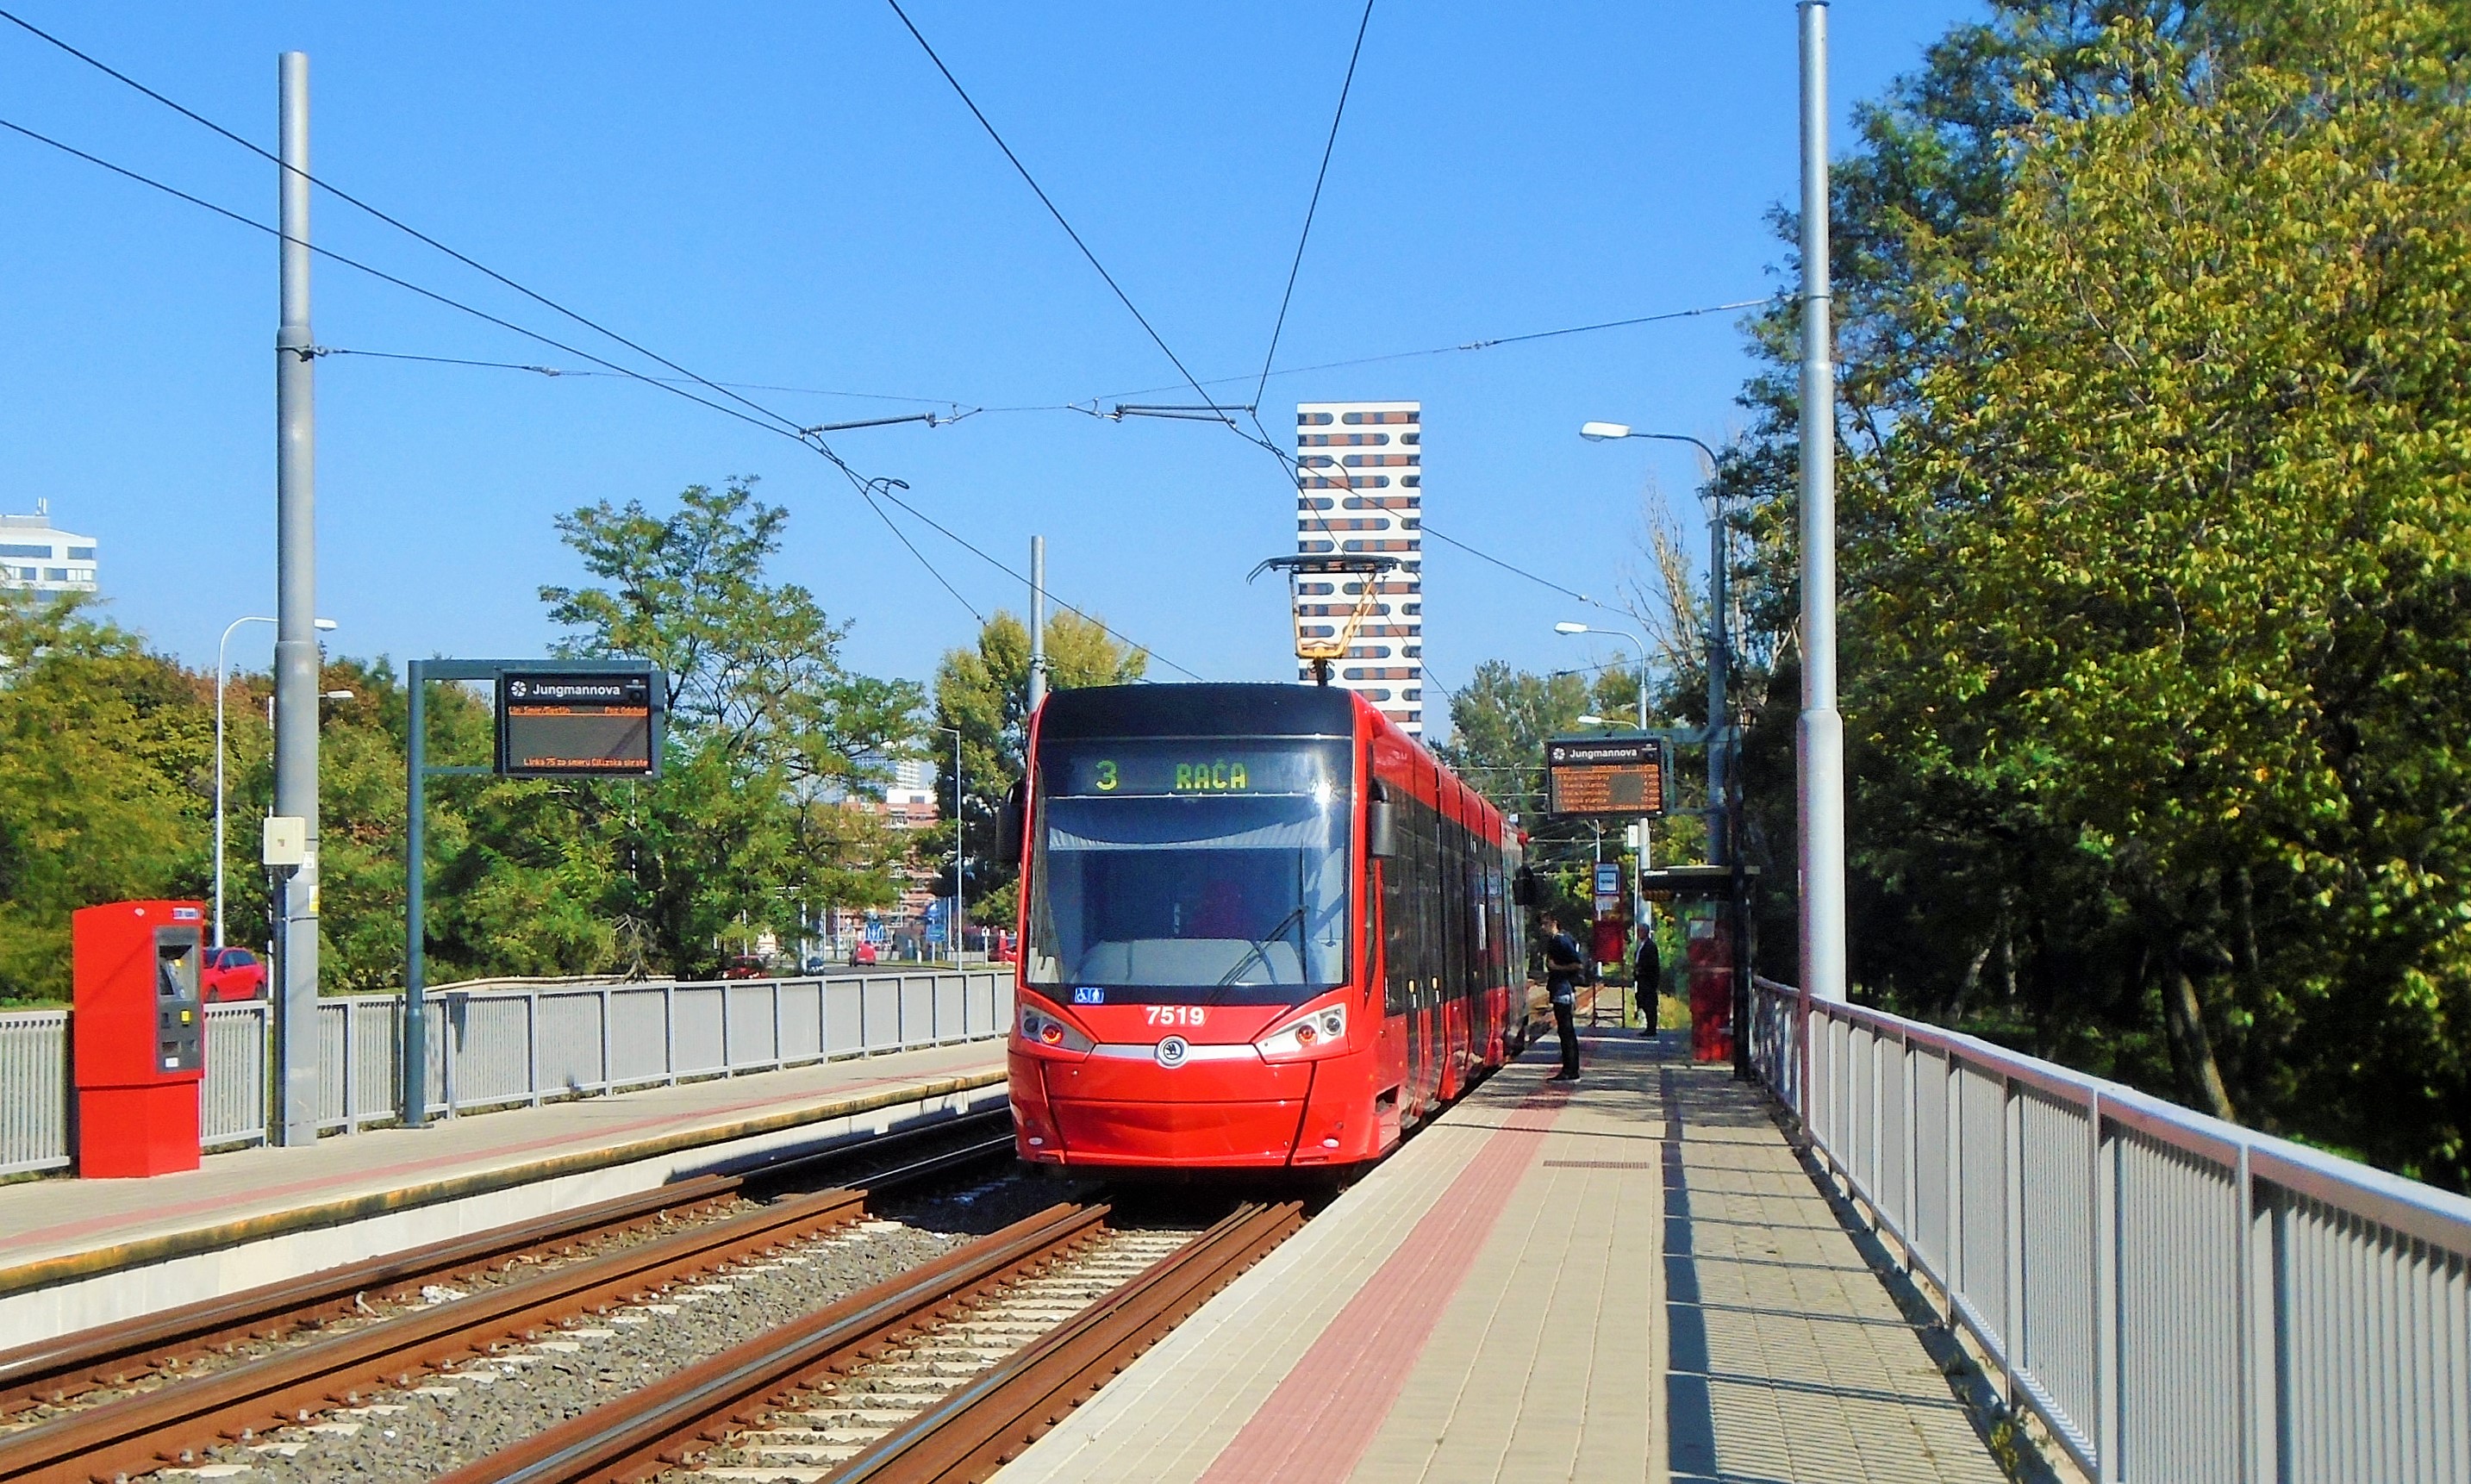 7519 stanicuje na lince 3 v nástupní zastávce Jungmannova na petržalské trati staré teprve 2 roky